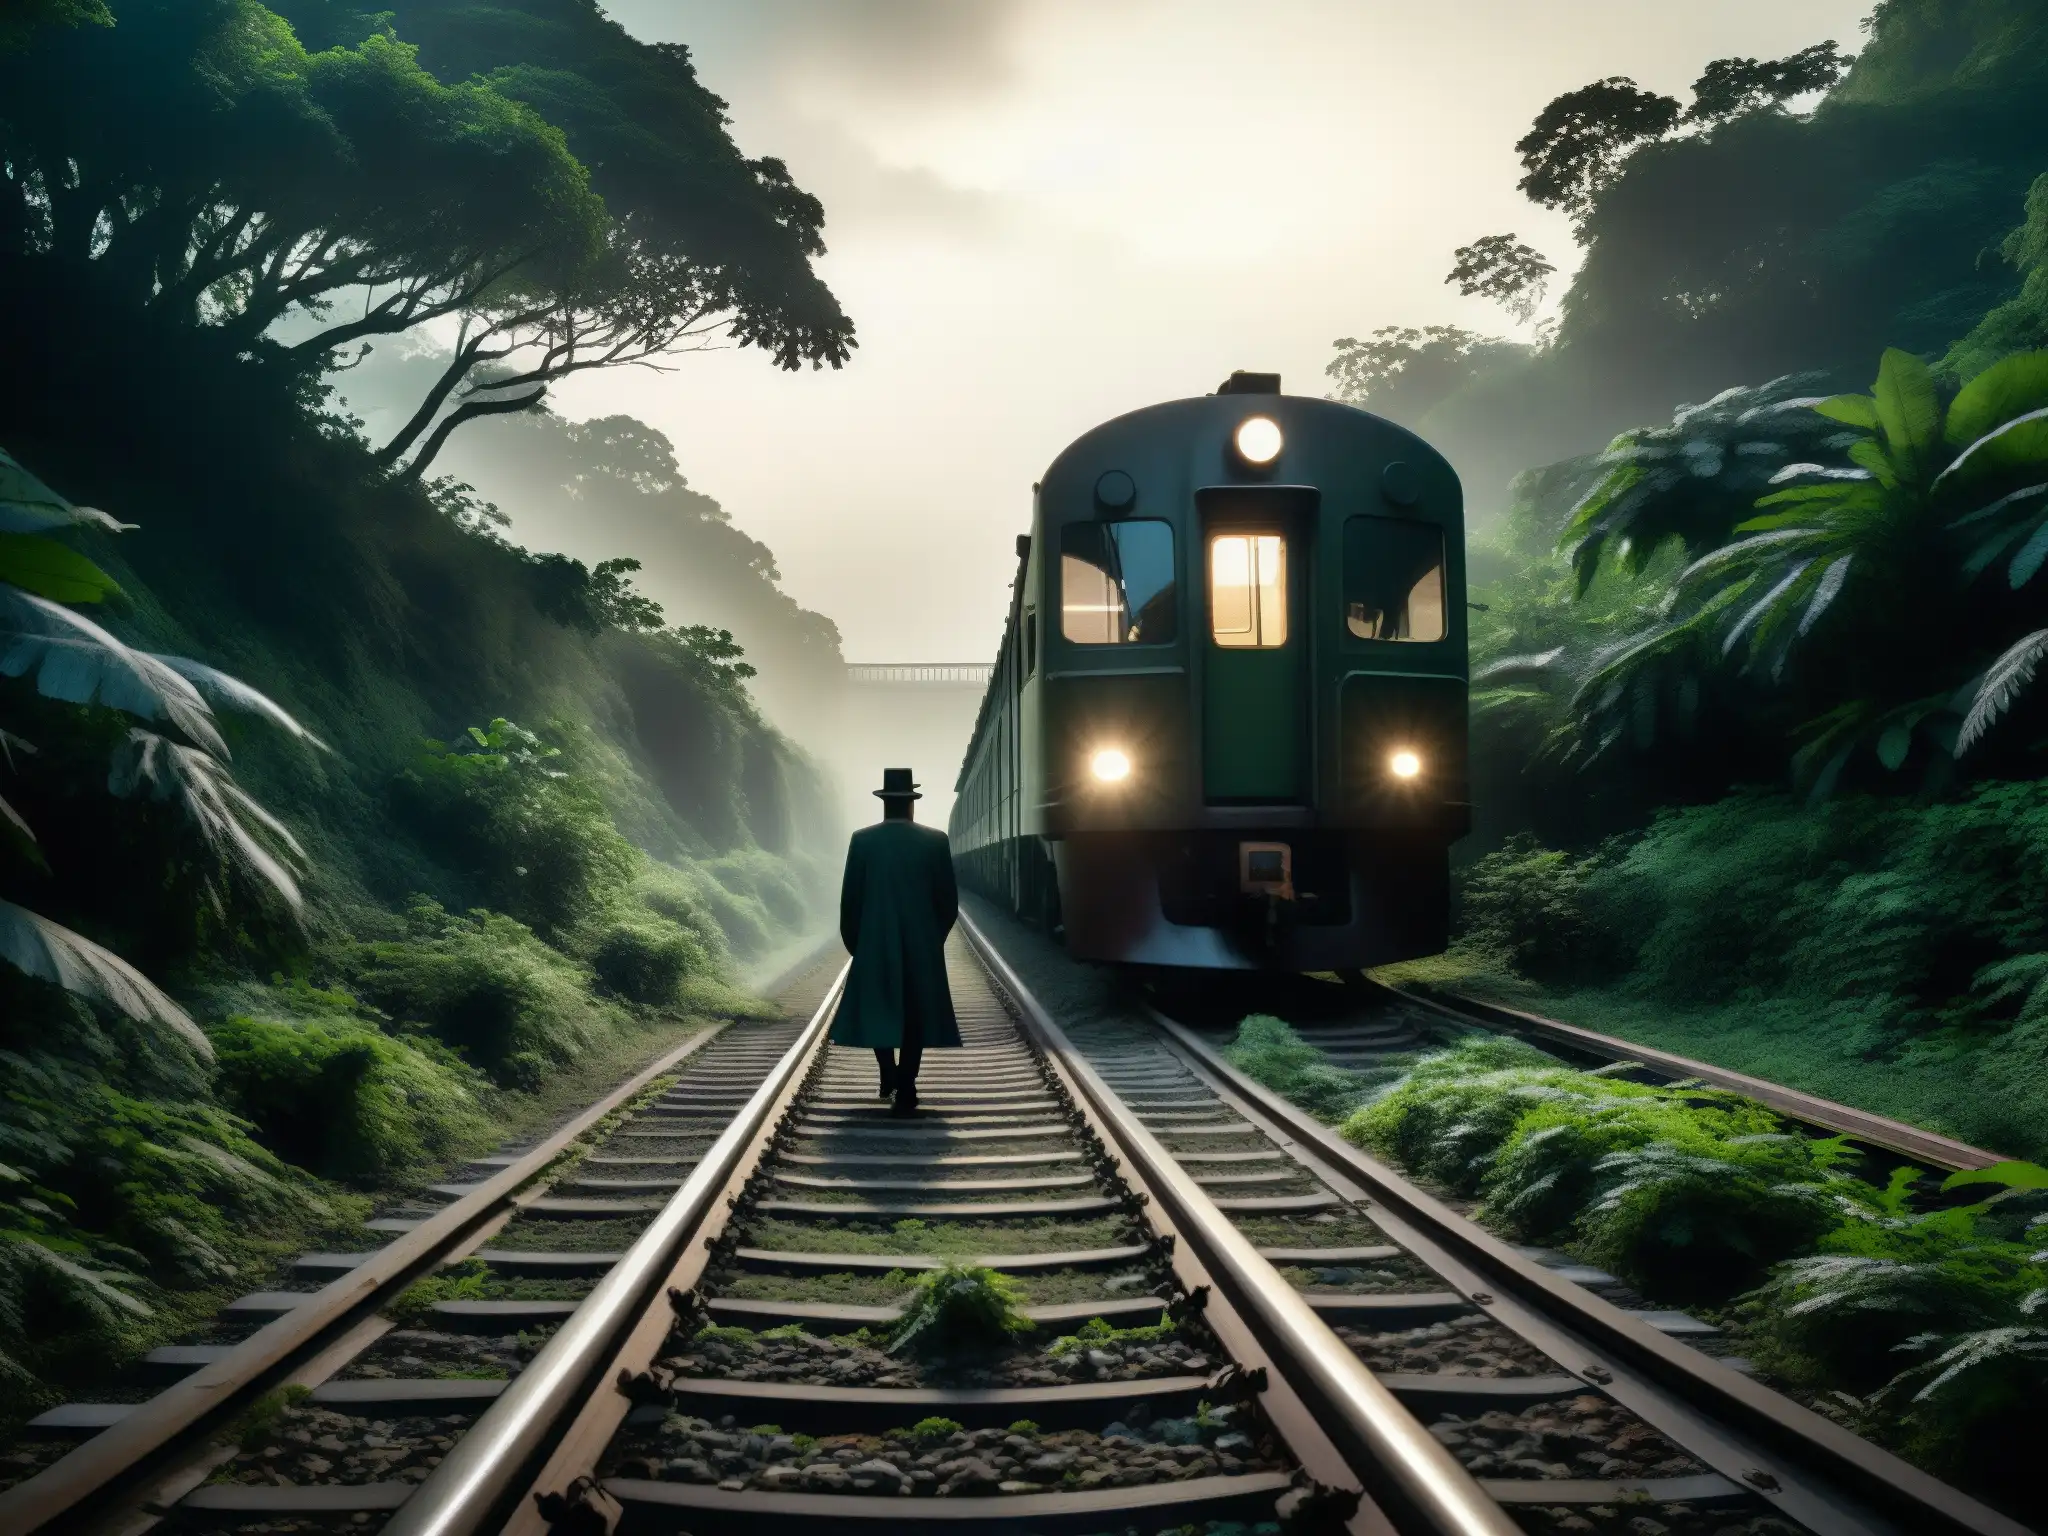 Tren Fantasma Bishan: vías cubiertas de niebla en bosque denso, con un tren abandonado al fondo